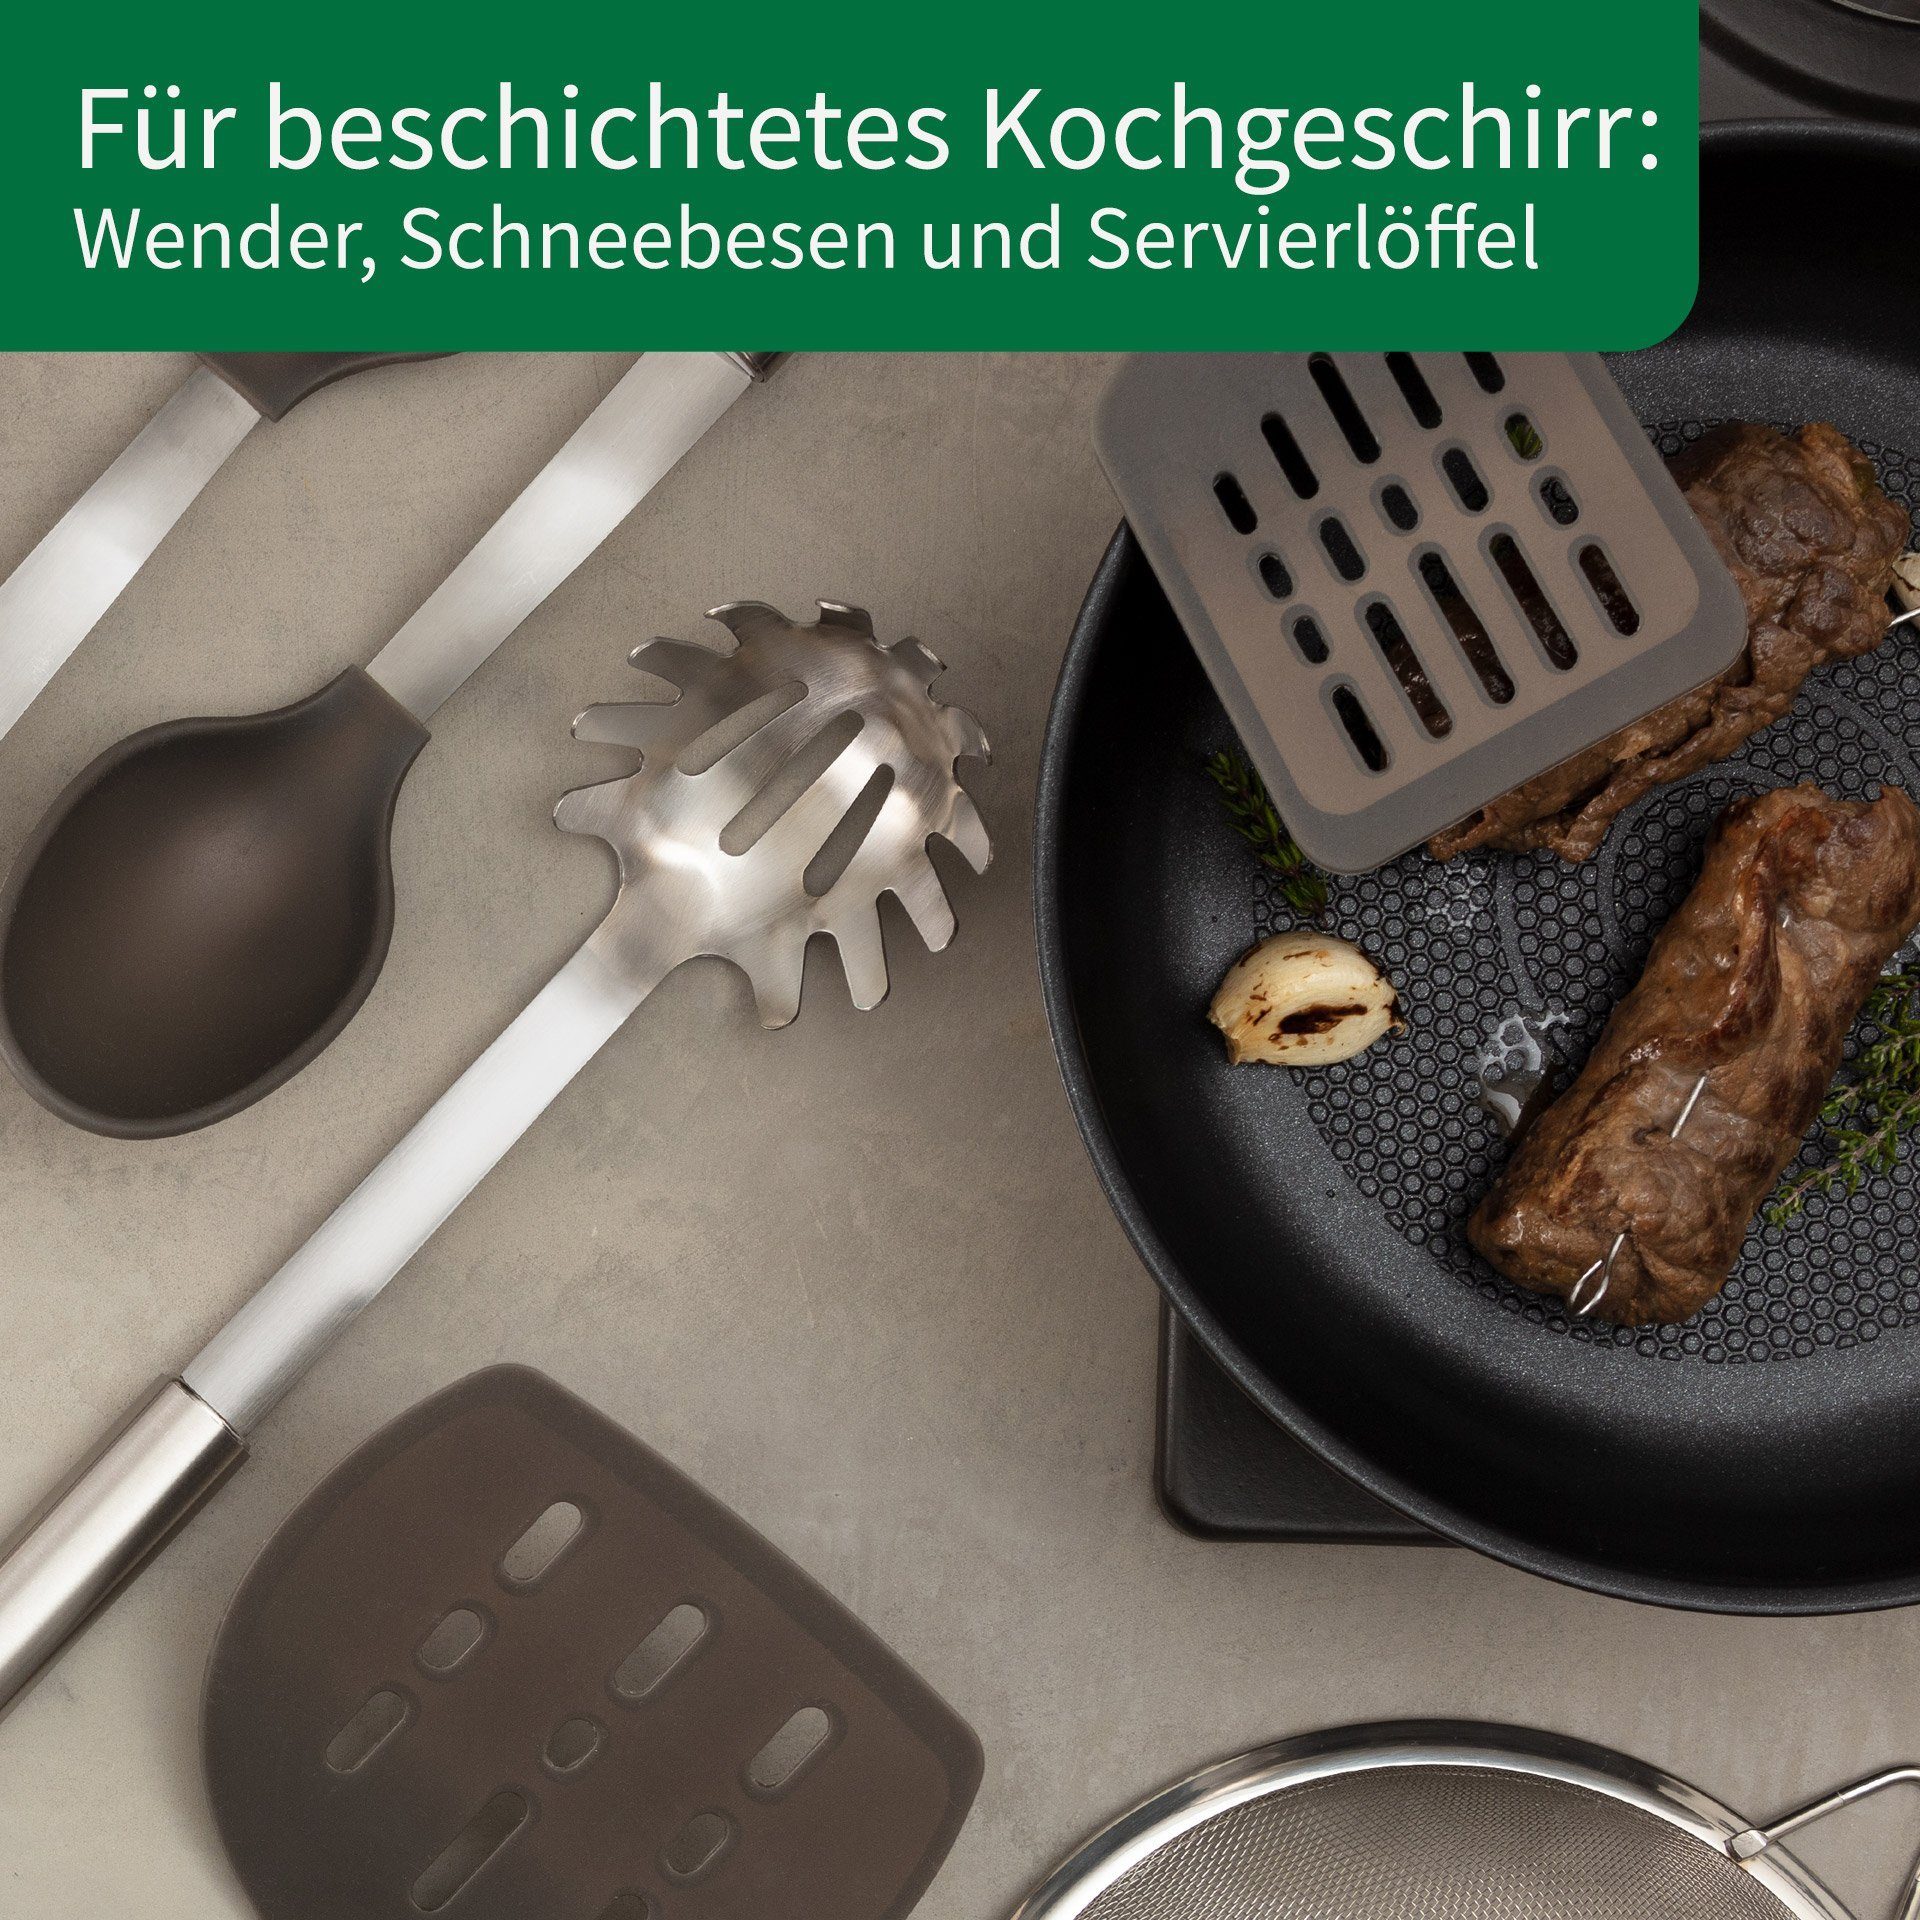 München Fackelmann Chefkoch trifft Kochbesteck-Set